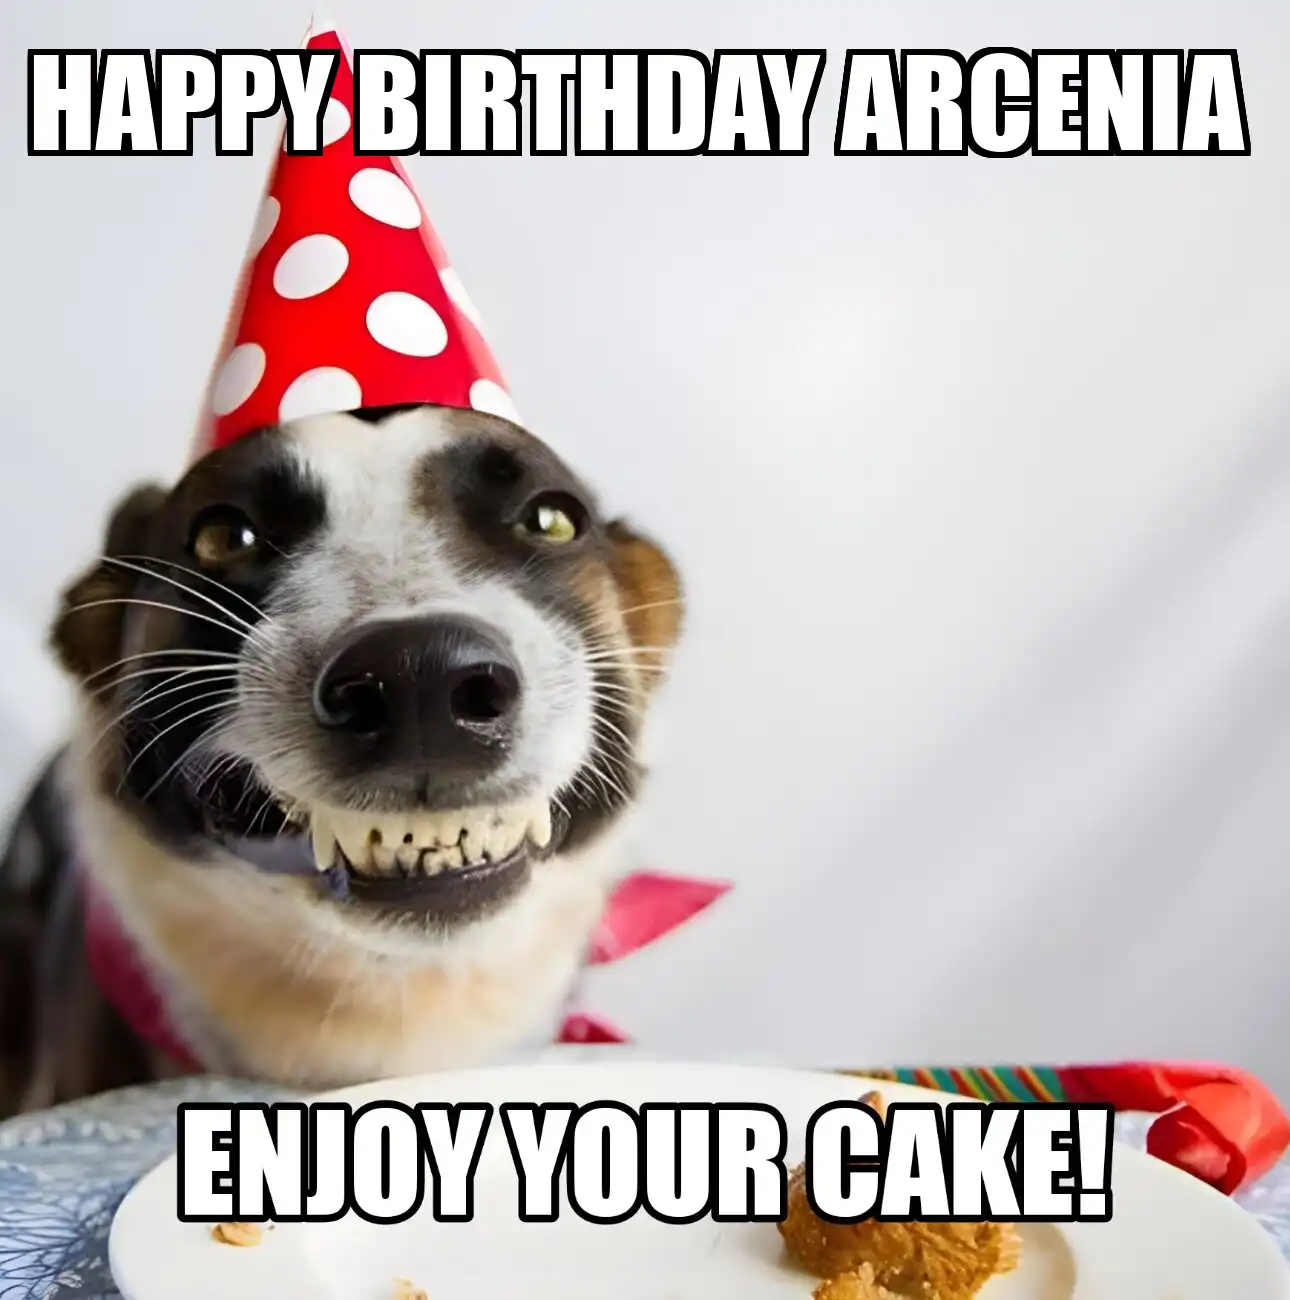 Happy Birthday Arcenia Enjoy Your Cake Dog Meme